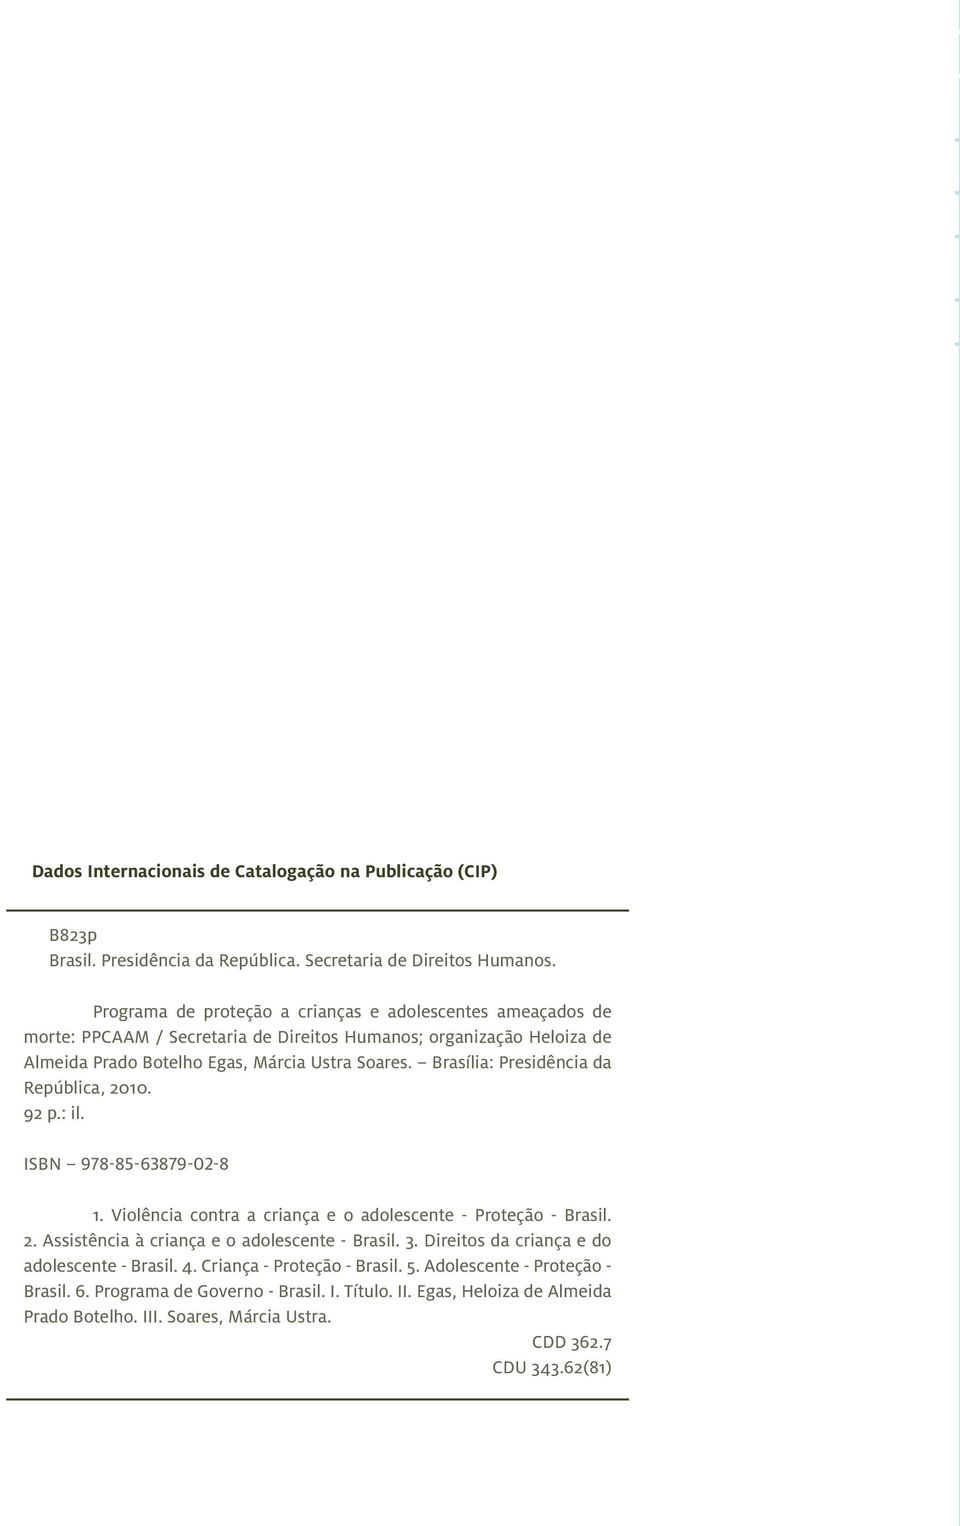 Brasília: Presidência da República, 2010. 92 p.: il. ISBN 978-85-63879-02-8 1. Violência contra a criança e o adolescente - Proteção - Brasil. 2. Assistência à criança e o adolescente - Brasil.